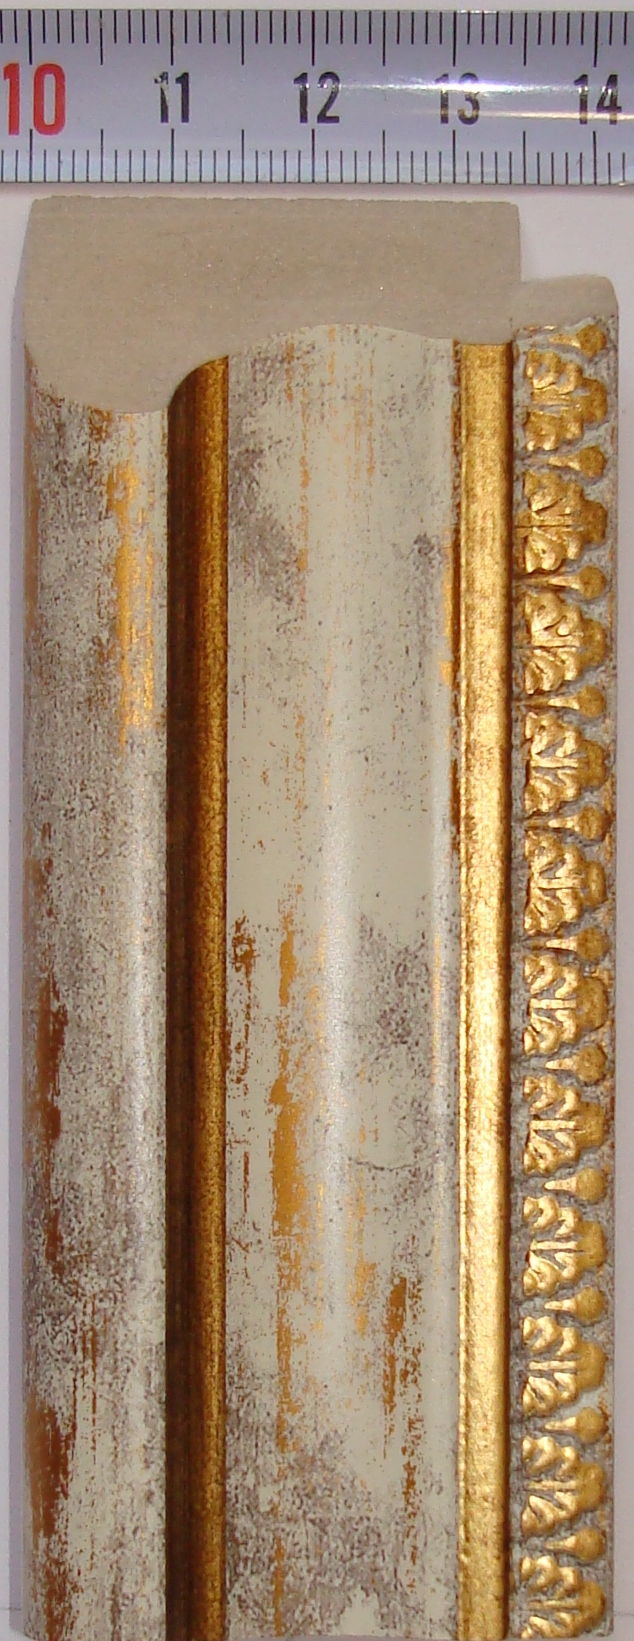 Багет пластиковый (1м. L-2,9) К. 950-252G / DС-4218-3 белый с золотом "Ю.Корея"